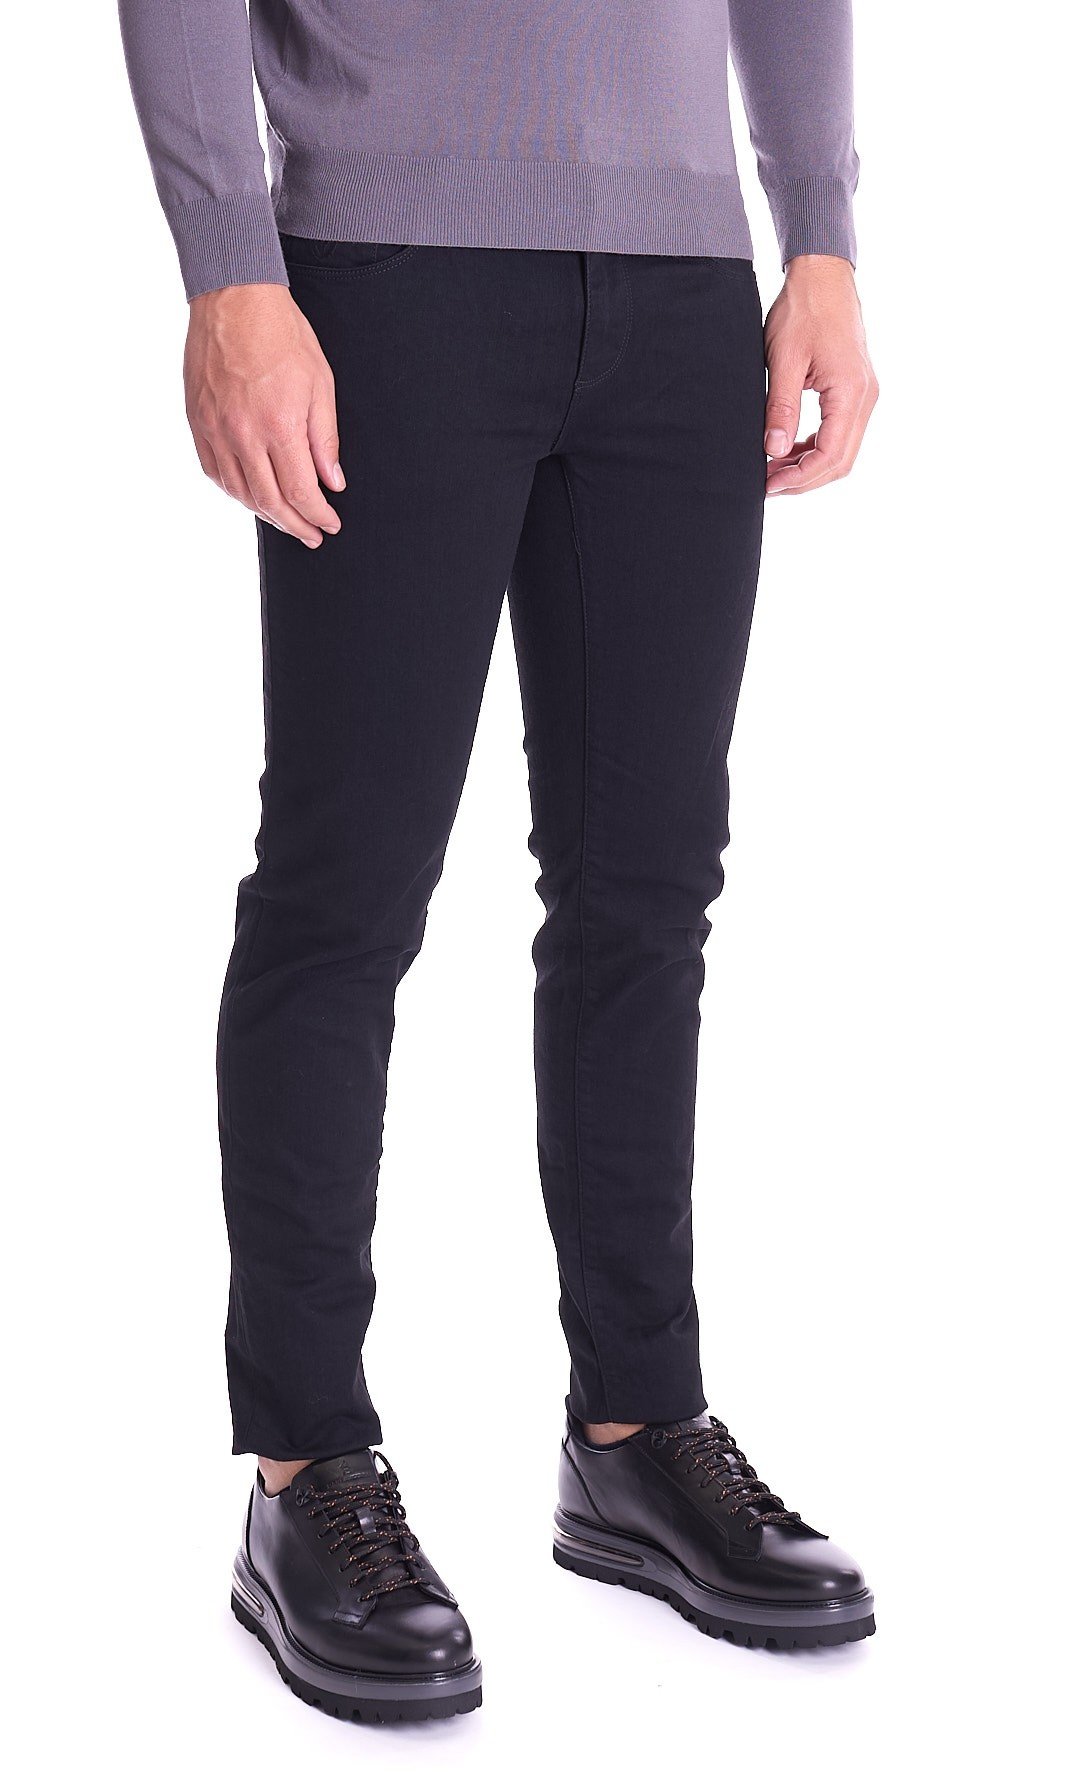 Men's jeans Trussardi jeans 370 close black stretch denim